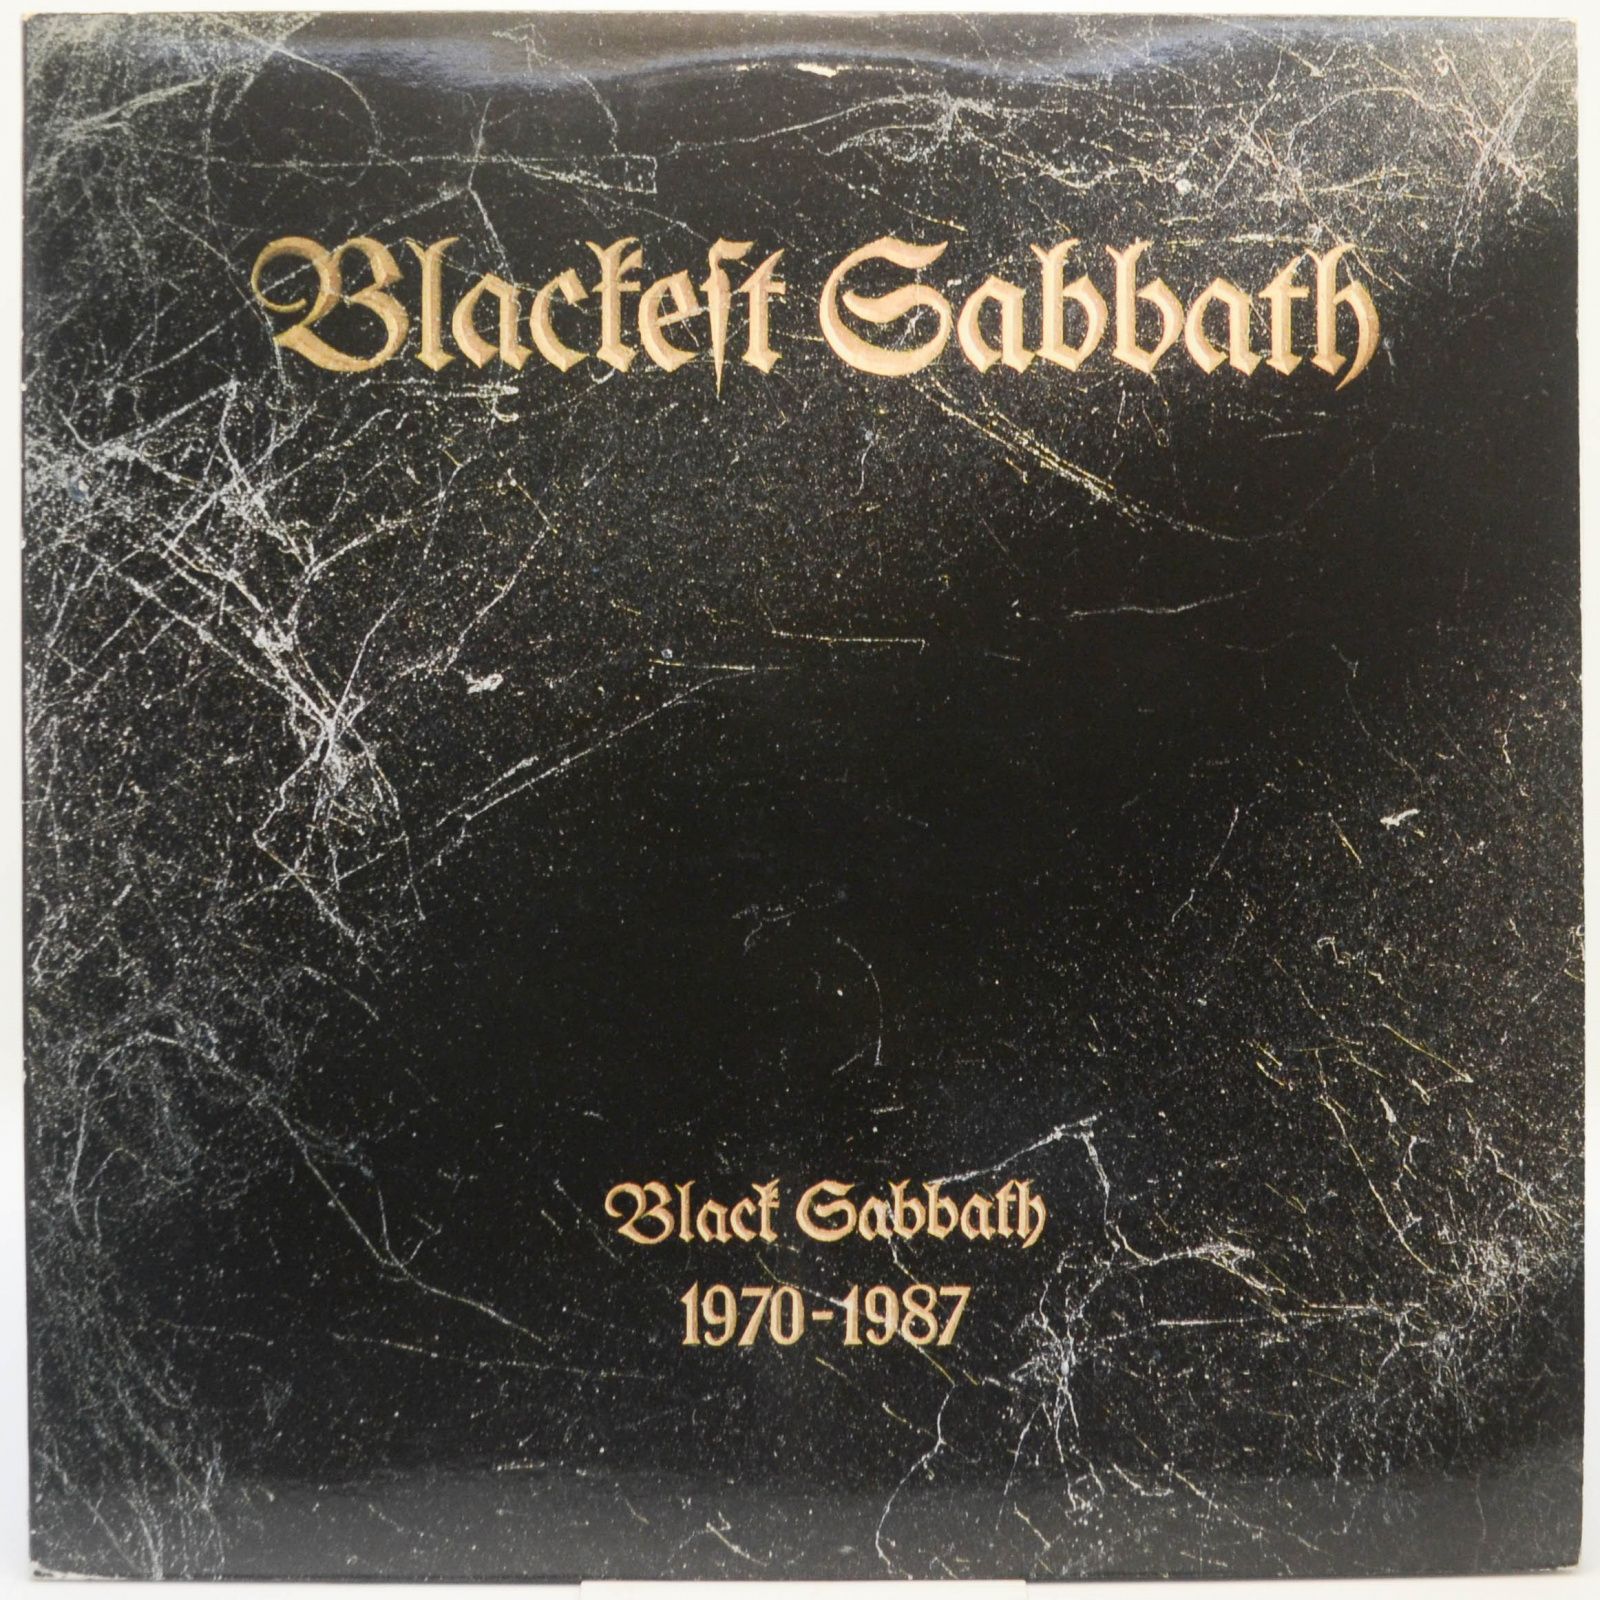 Black Sabbath — Blackest Sabbath: Black Sabbath 1970-1987 (2LP), 1989